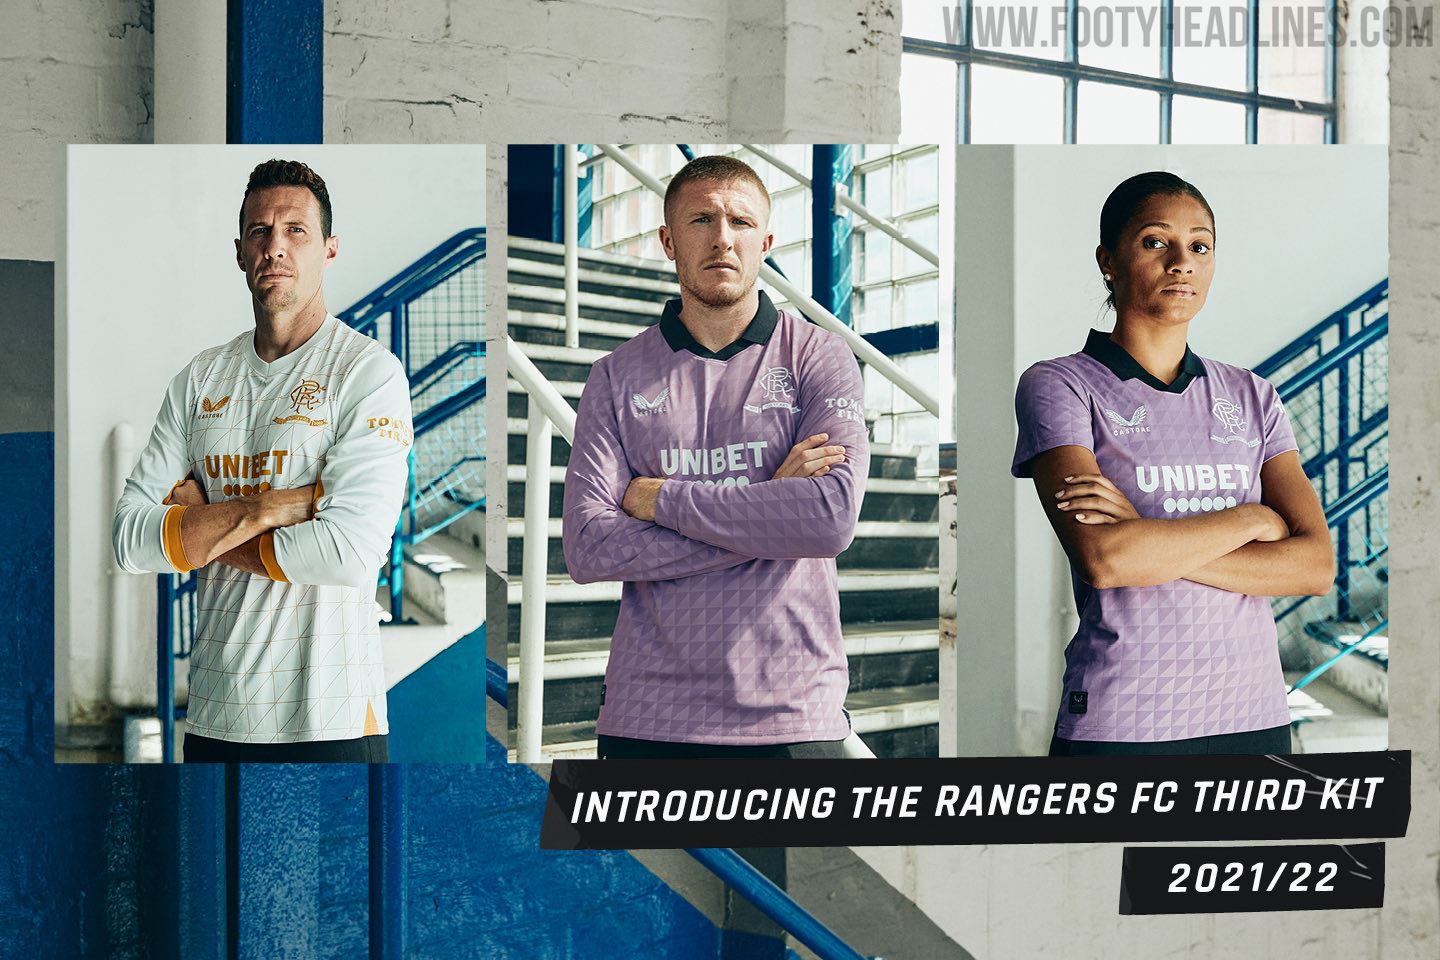 Rangers 21-22 Away Kit Released - Footy Headlines